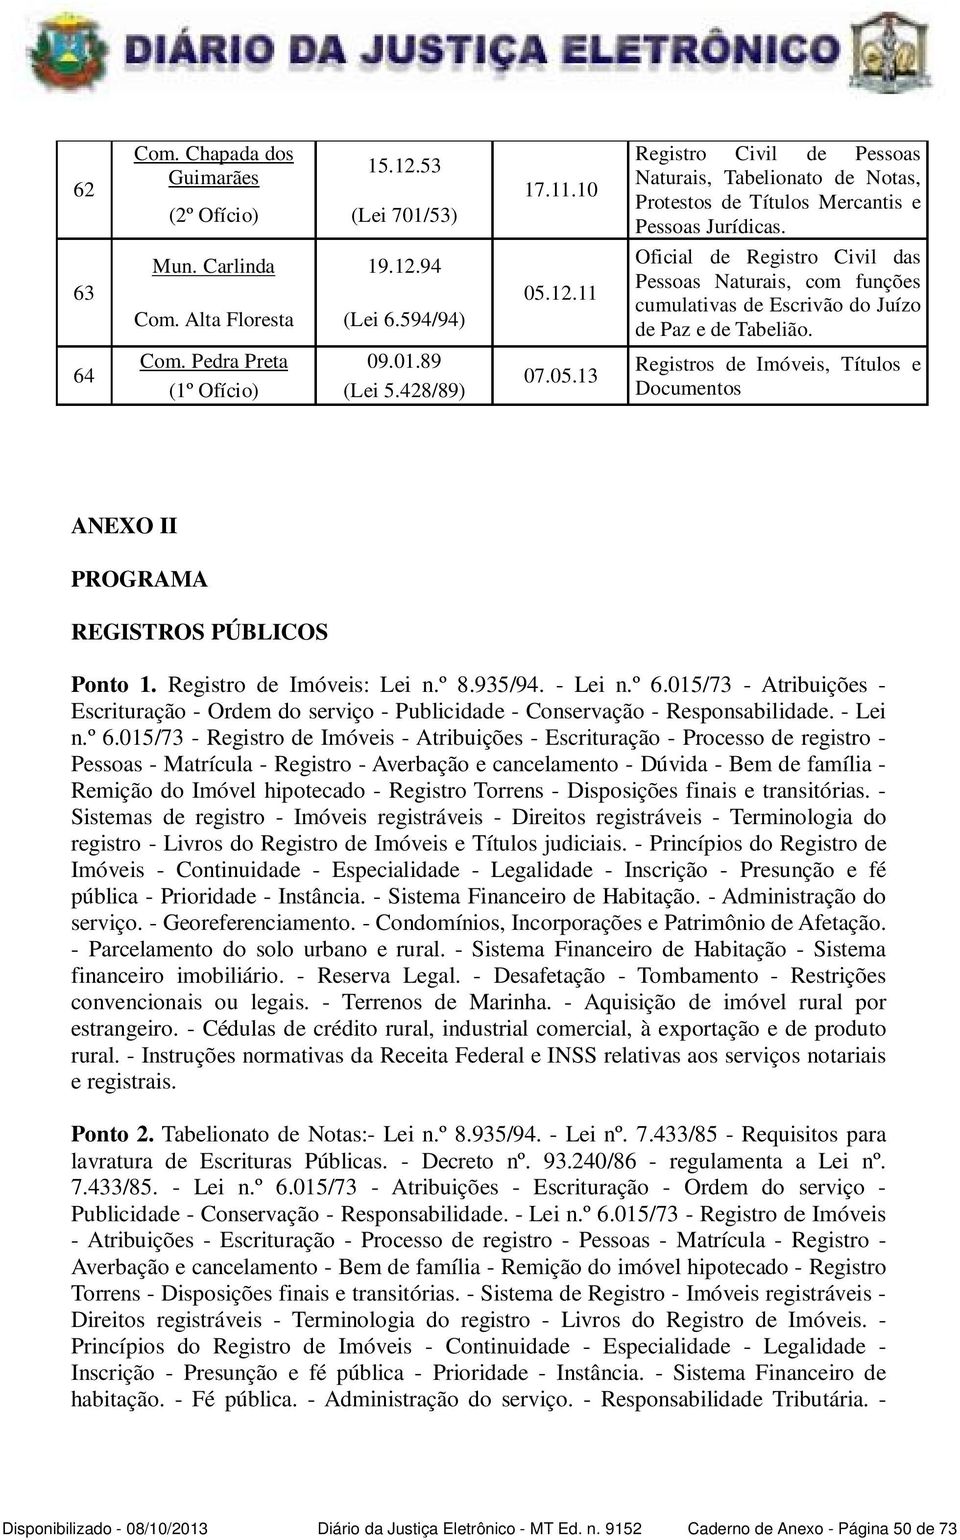 Oficial de Registro Civil das Pessoas Naturais, com funções cumulativas de Escrivão do Juízo de Paz e de Tabelião.